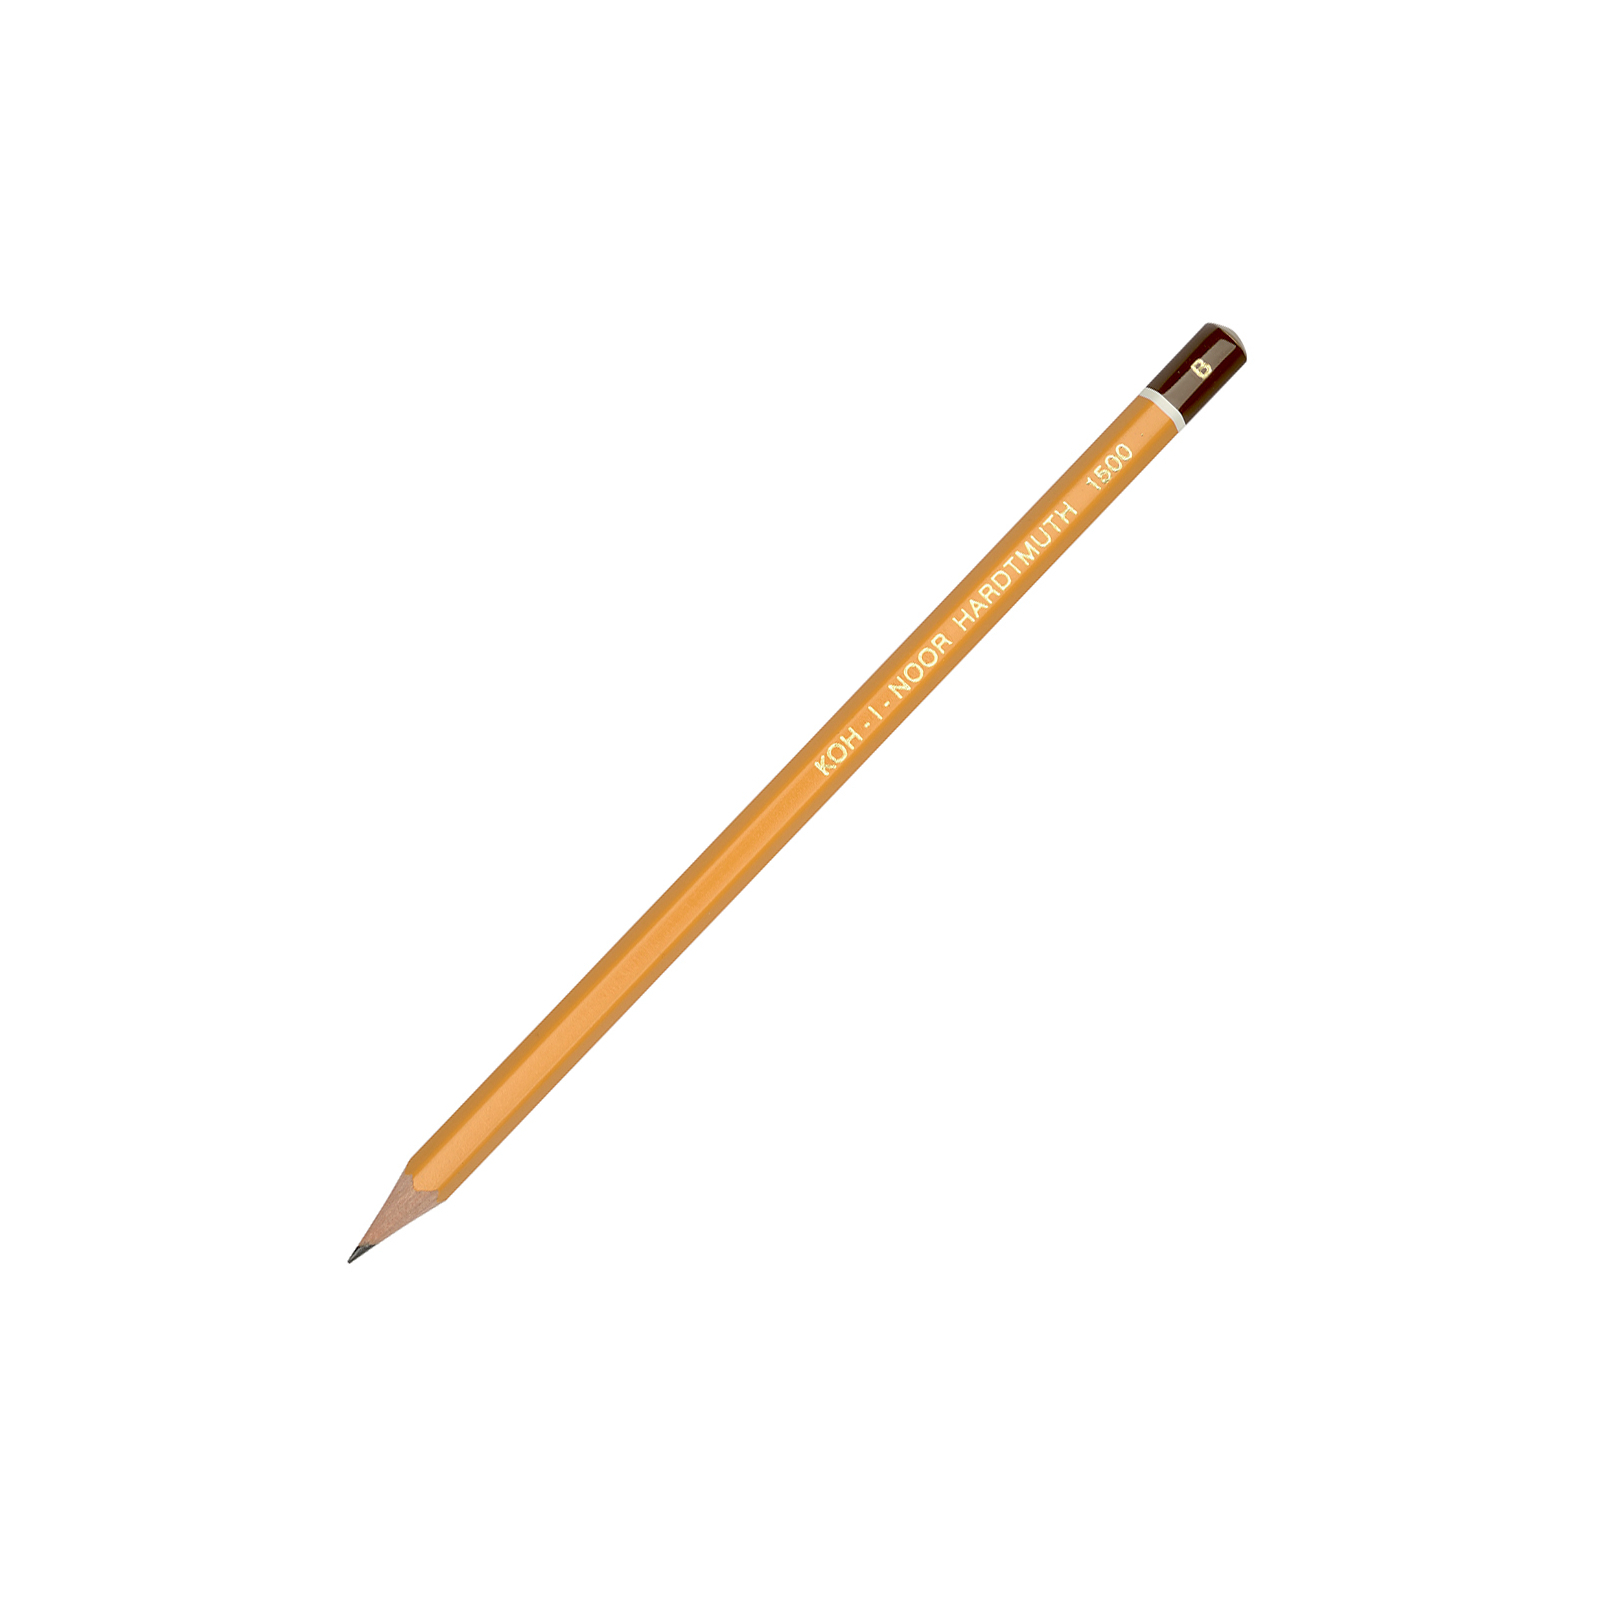 Олівець графітний Koh-i-Noor 1500 B (150000B01170)